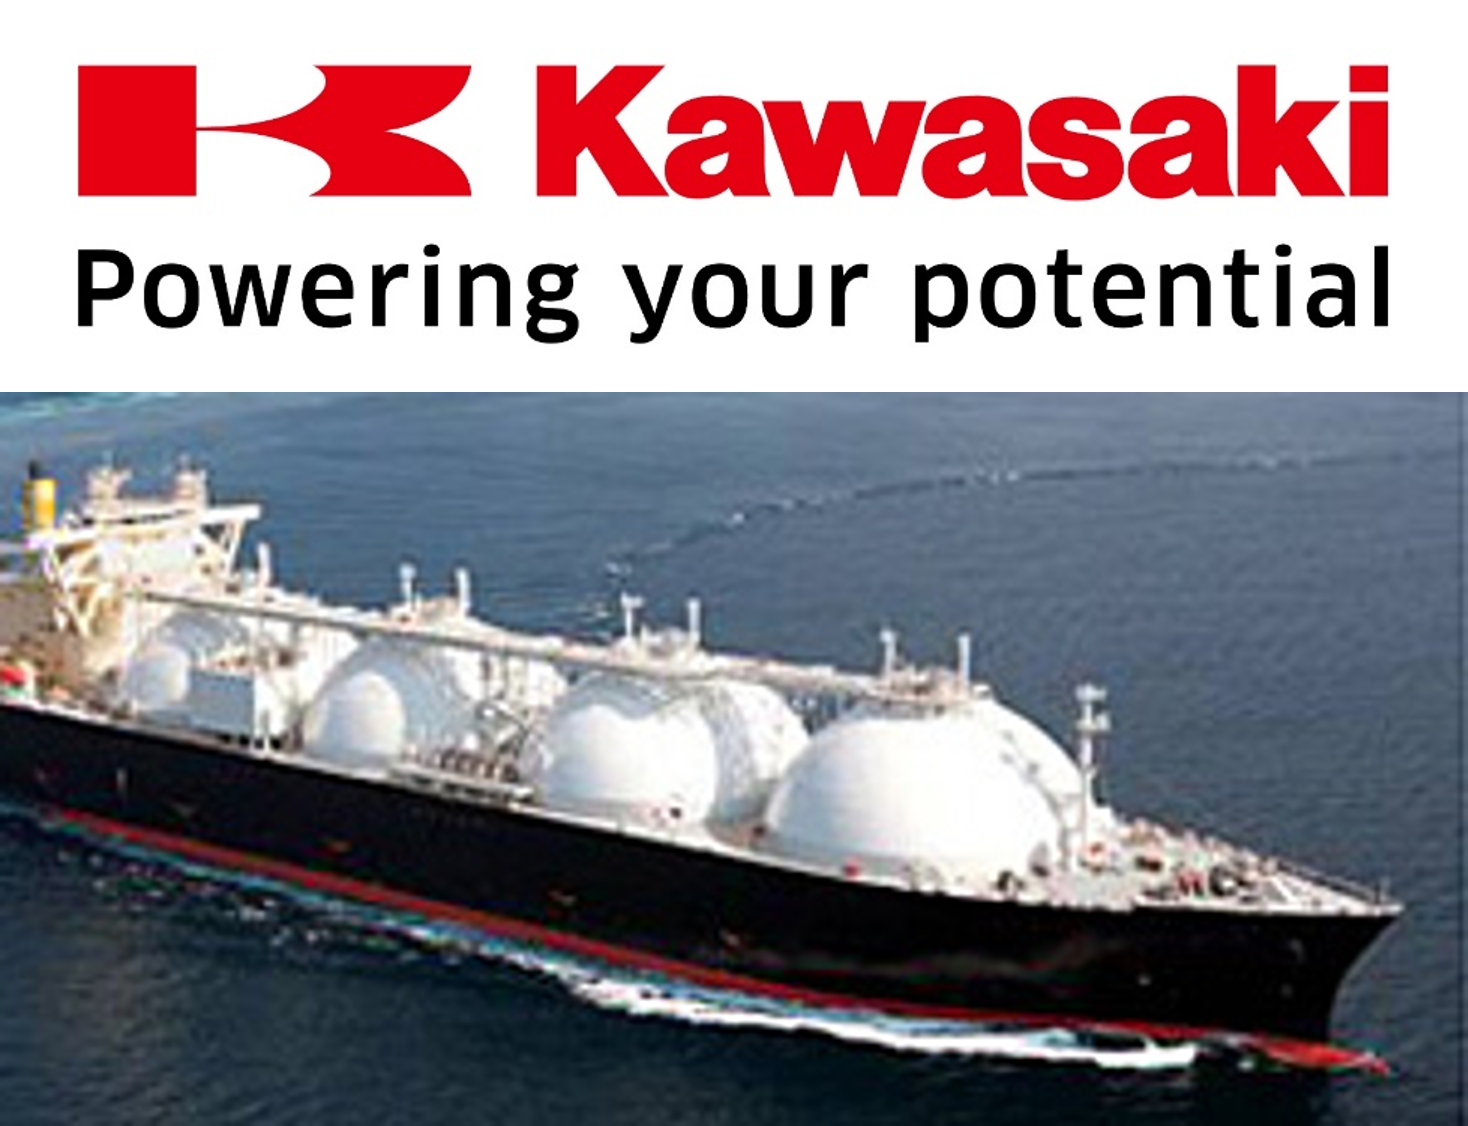 Kawasaki Powerng your potential